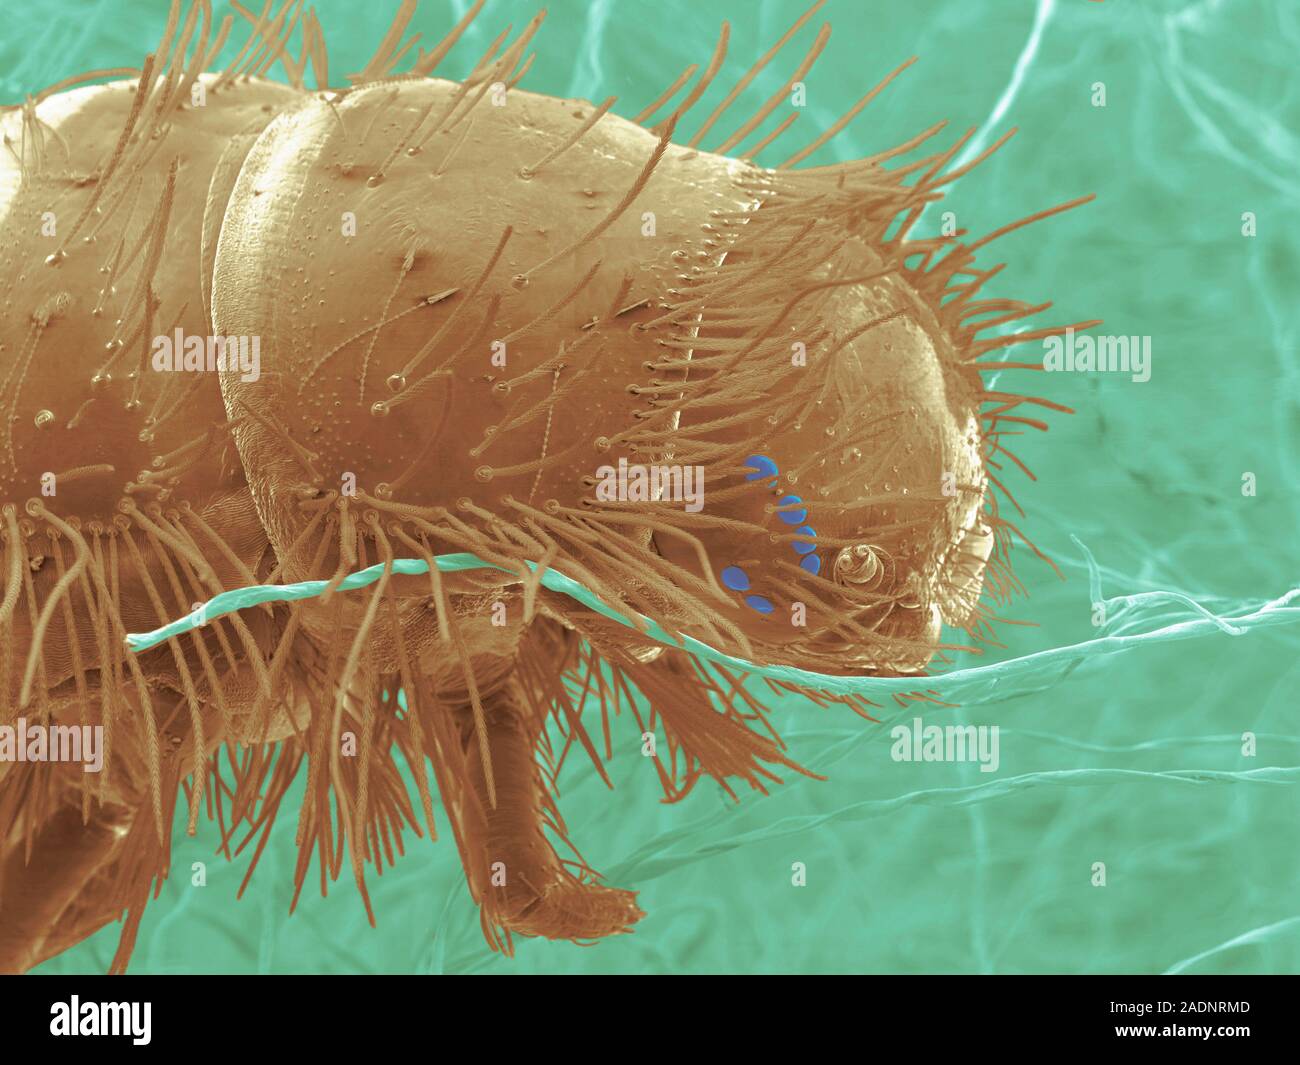 La larva del escarabajo de alfombra. Color análisis micrografía de  electrones (SEM) de la cabeza de una alfombra de la larva del escarabajo  (Anthrenus sp.) sobre las fibras para alfombras. Escarabajo de